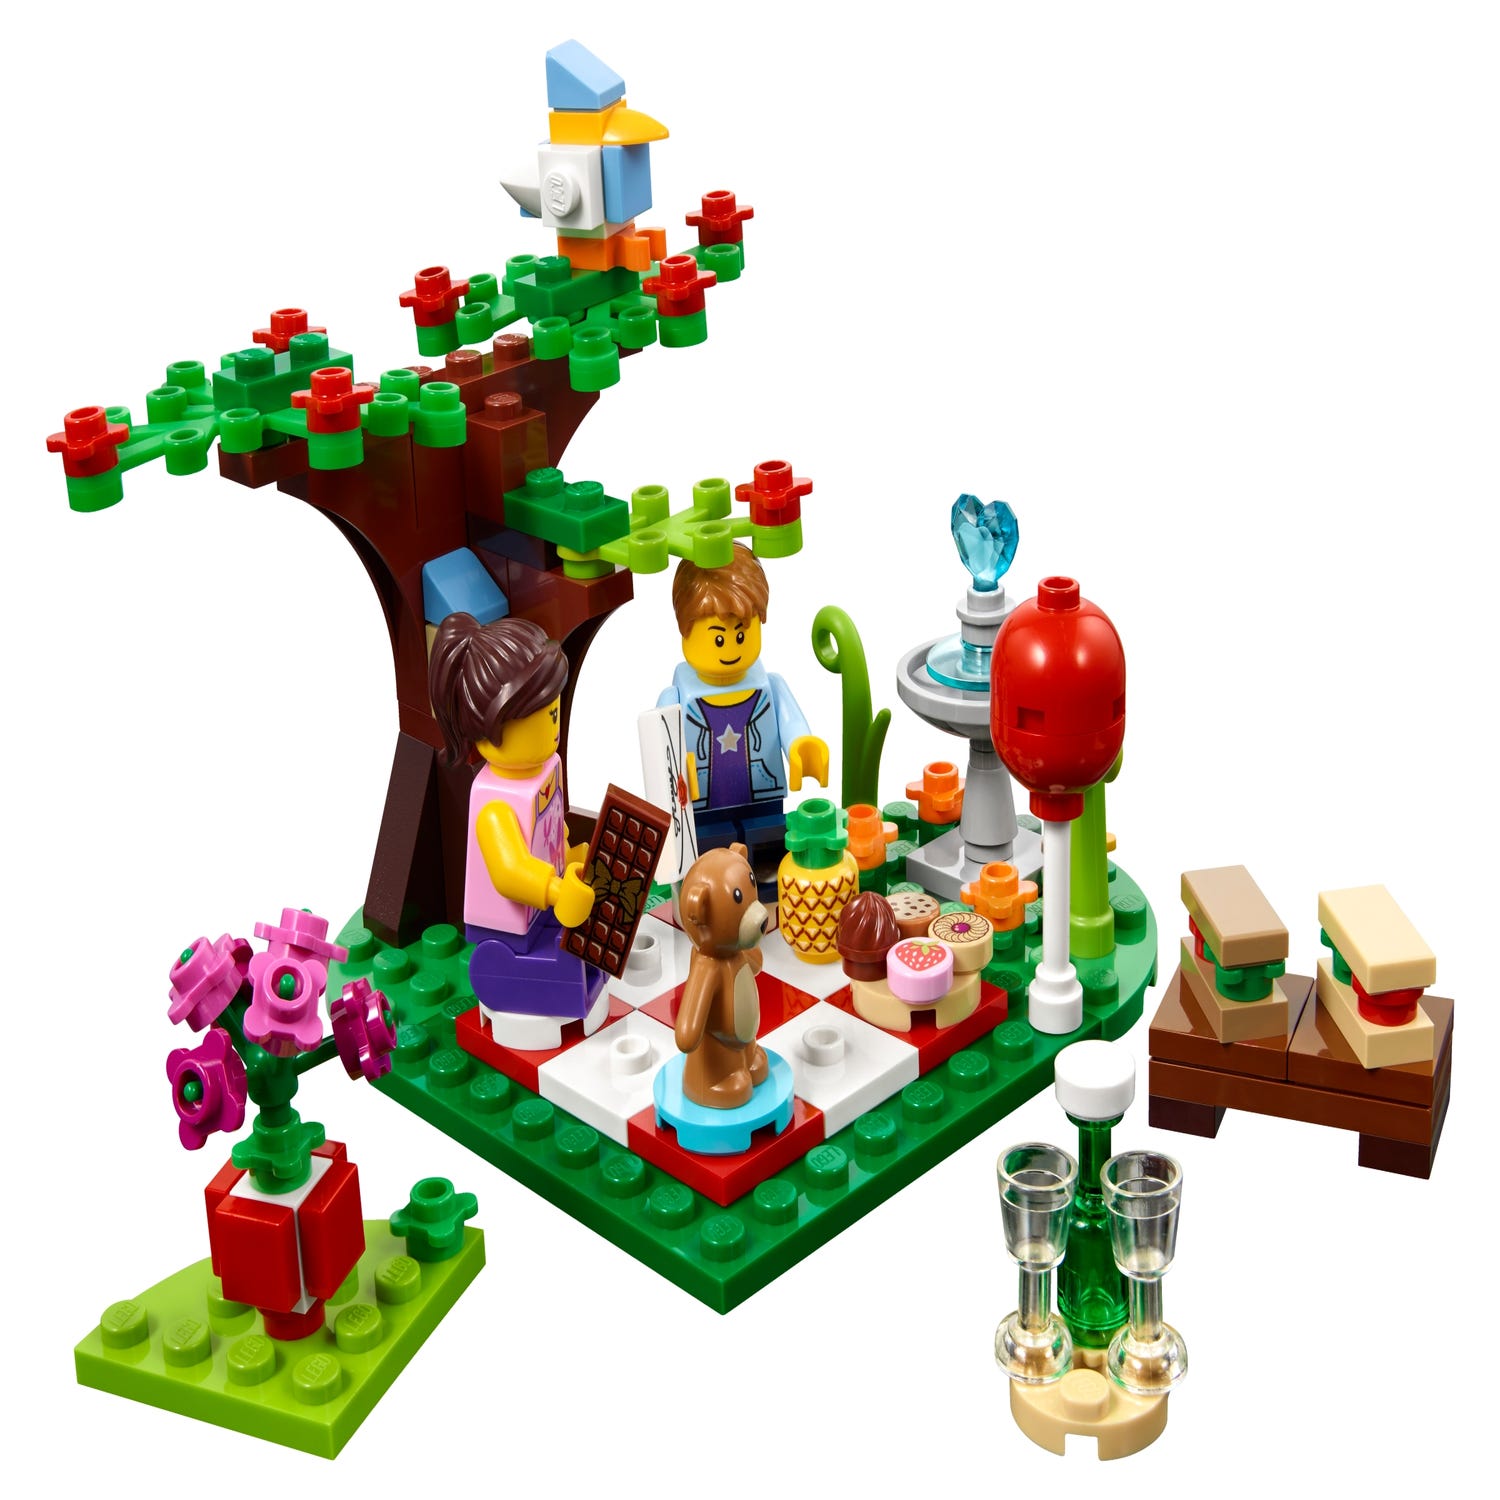 Lego 40236 - Picnic Romántico de San Valentín - Bettoy Coleccionistas